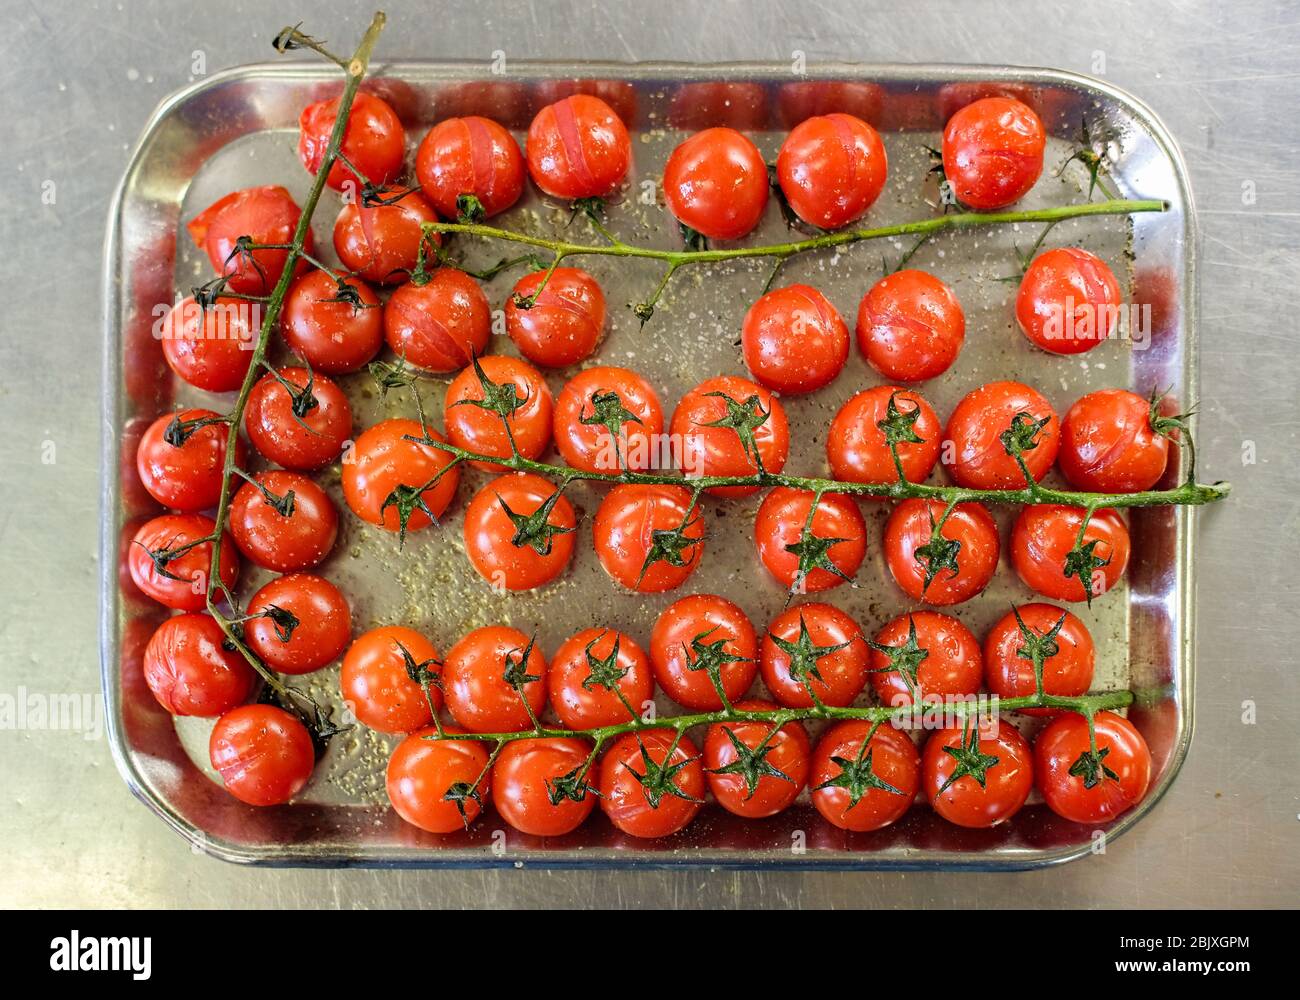 Tomates cerises cuites au four sur une plaque de cuisson dans la cuisine du restaurant. Vue de dessus, plan d'appartement Banque D'Images